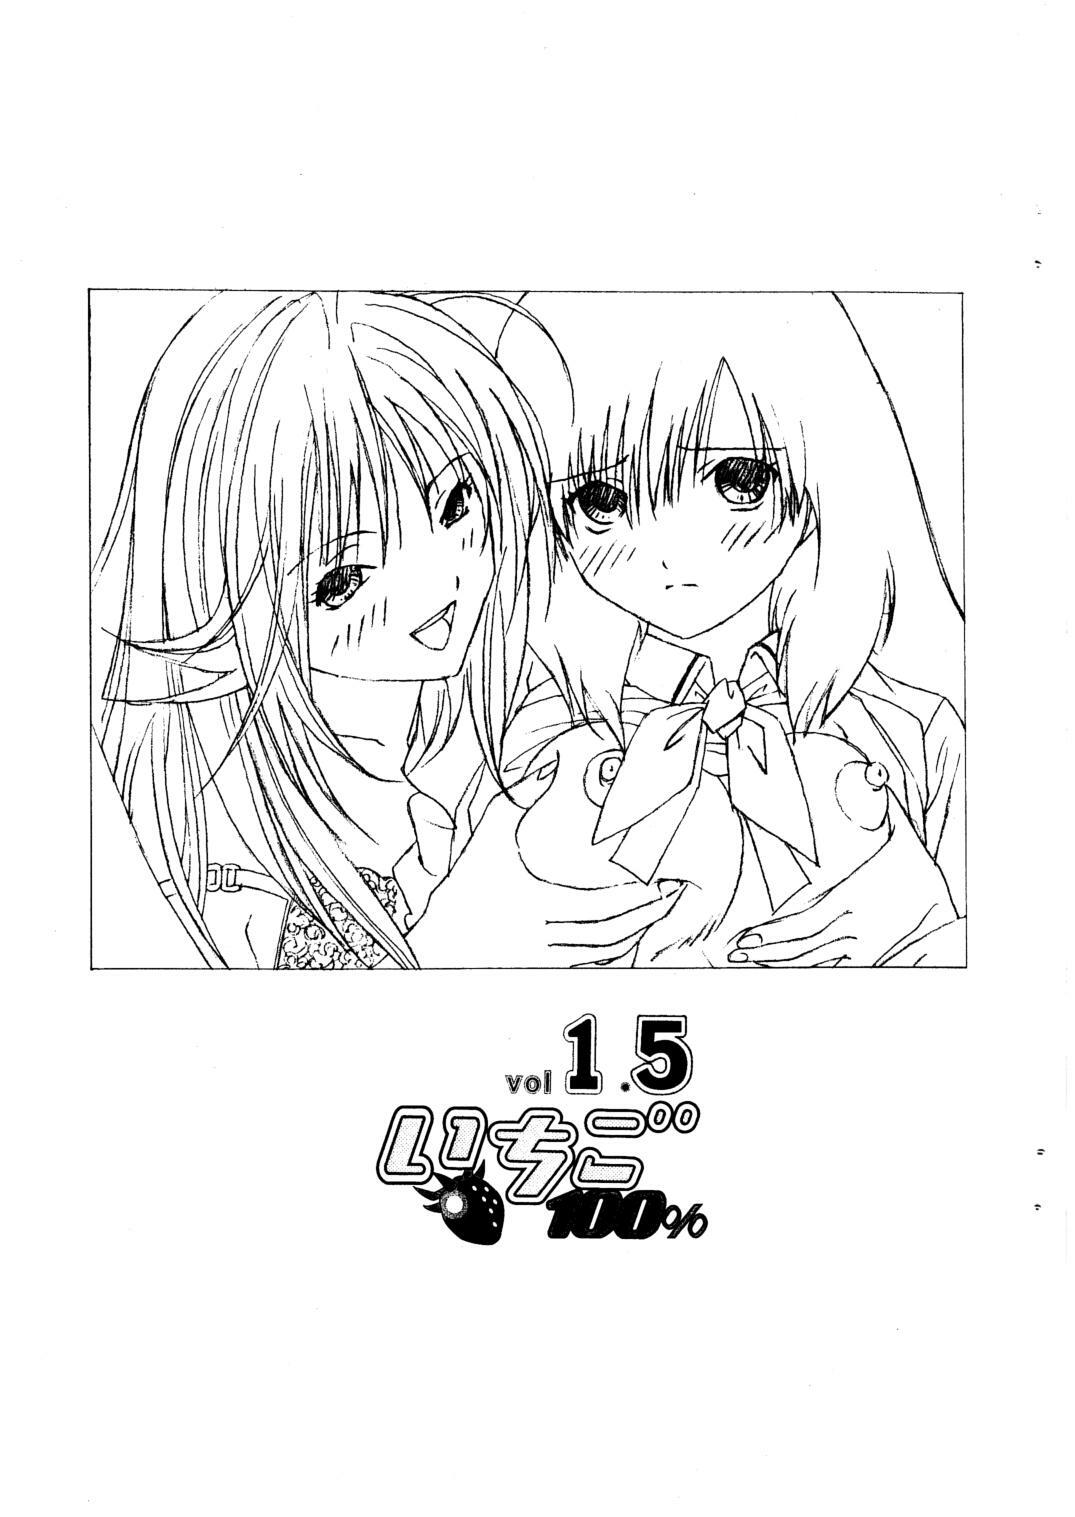 [Shimekiri Sanpunmae (Tukimi Daifuku)] Ichigo 100% vol. 1.5 (Ichigo 100%) page 2 full